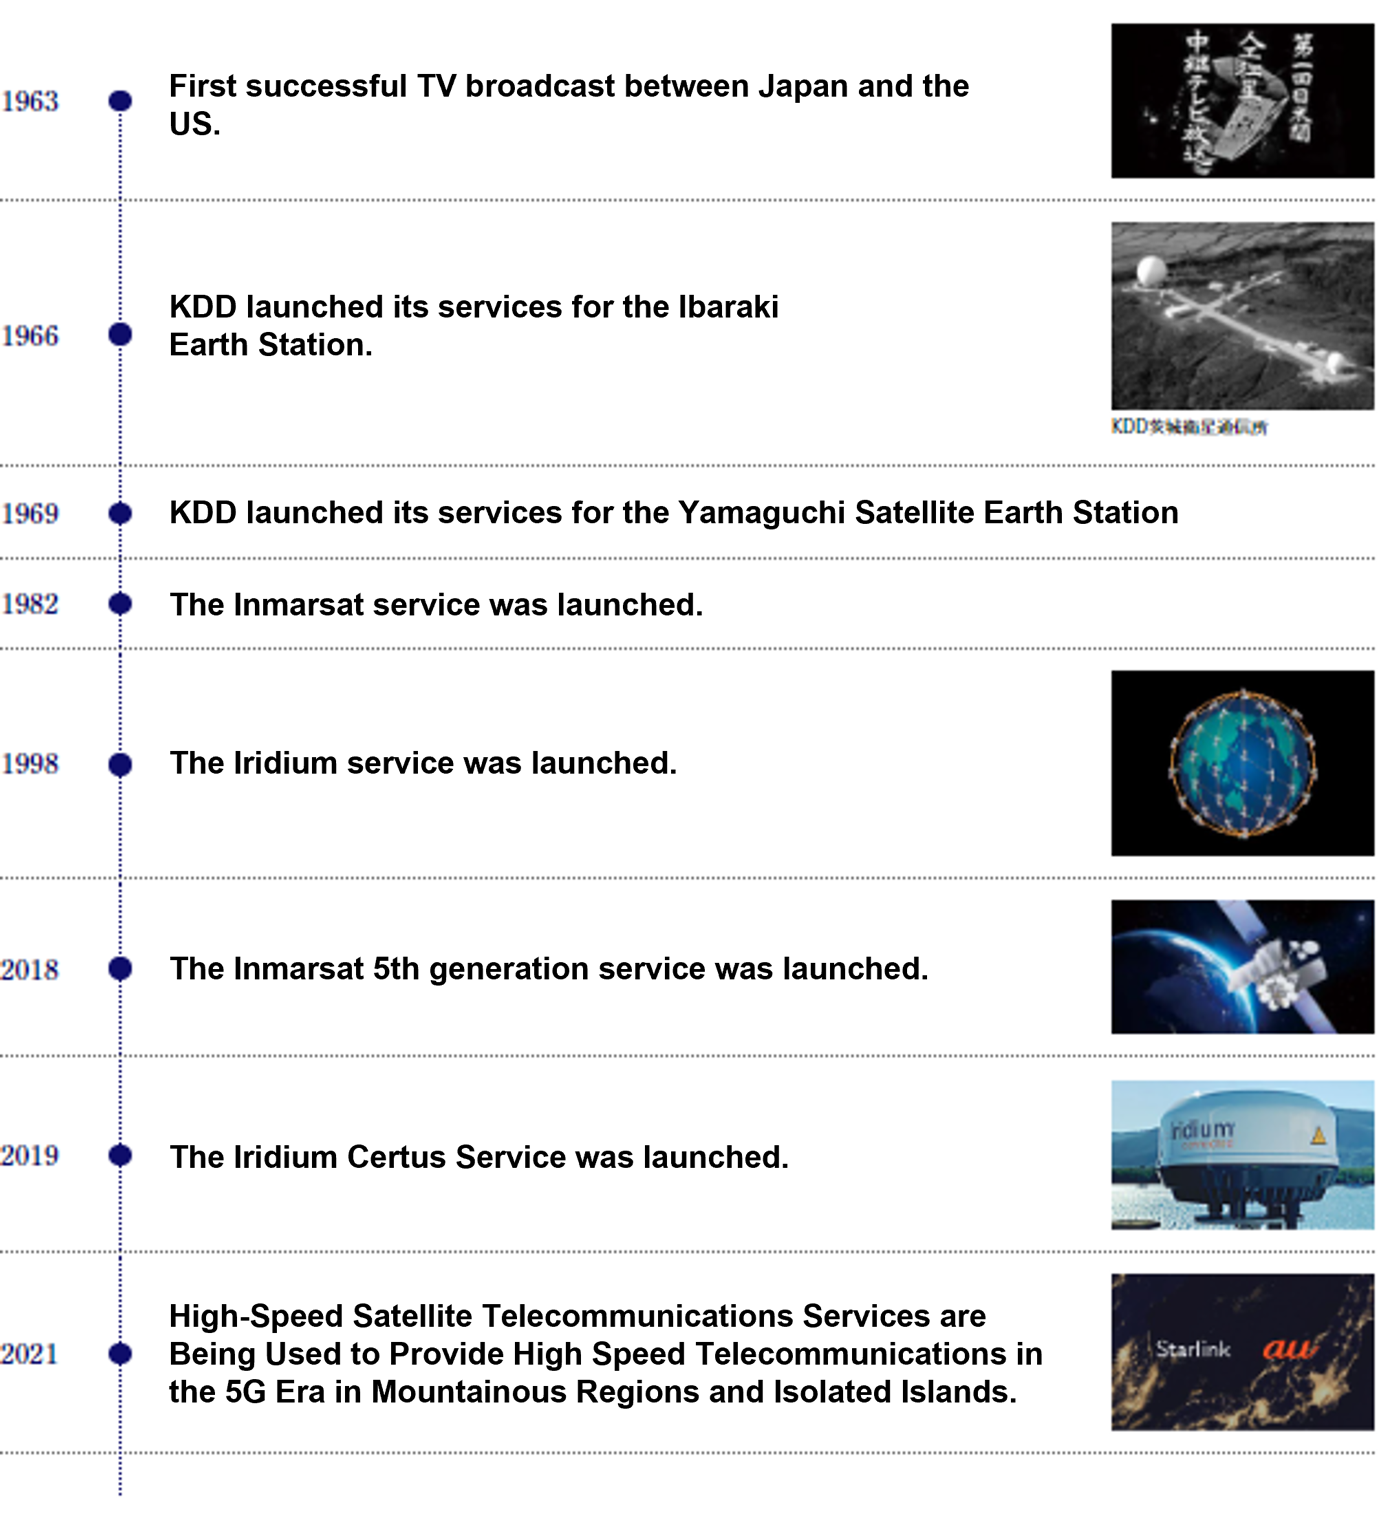 KDDI's History of Satellite Telecommunications